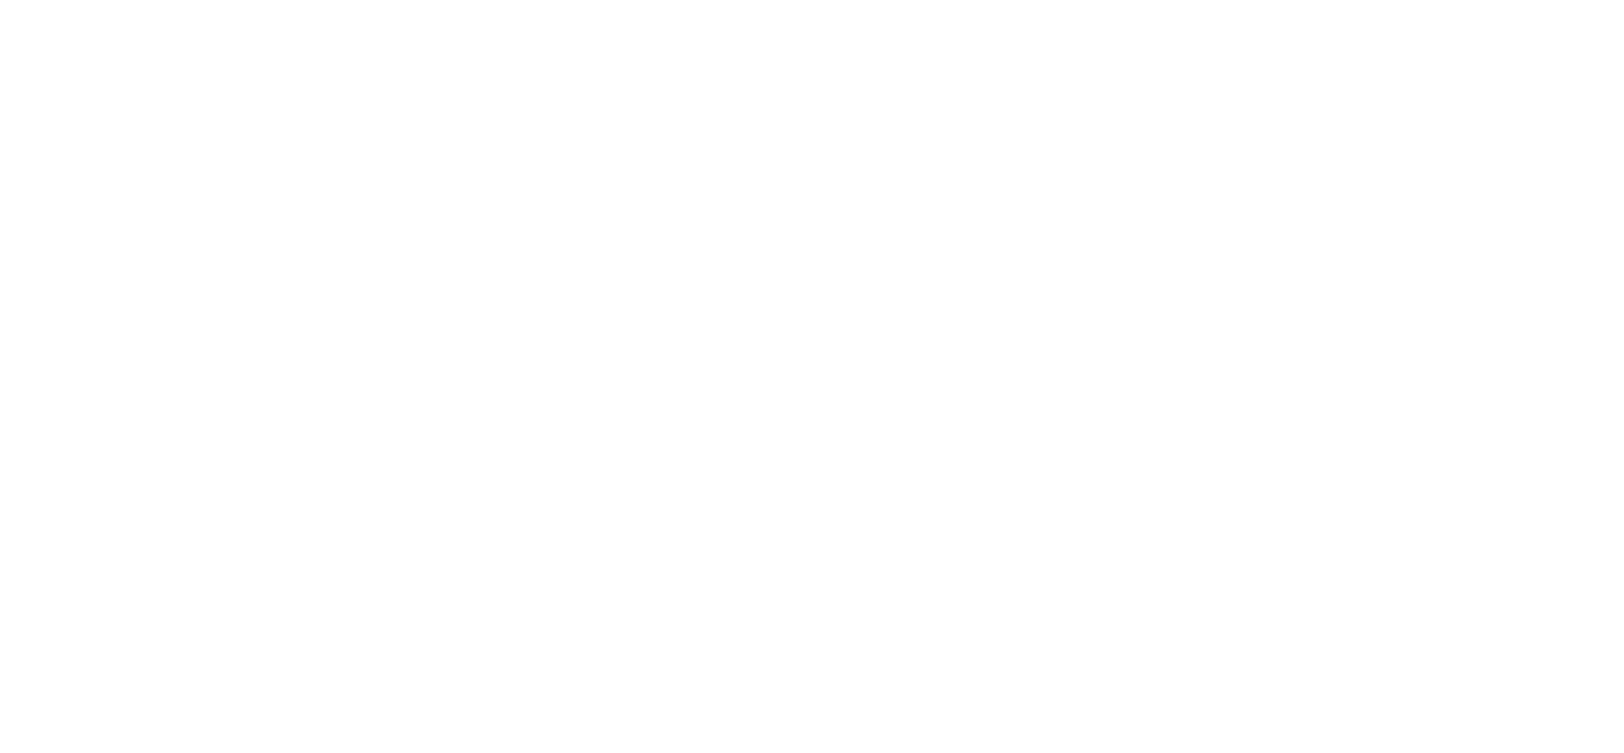 Primary Health Properties Logo groß für dunkle Hintergründe (transparentes PNG)